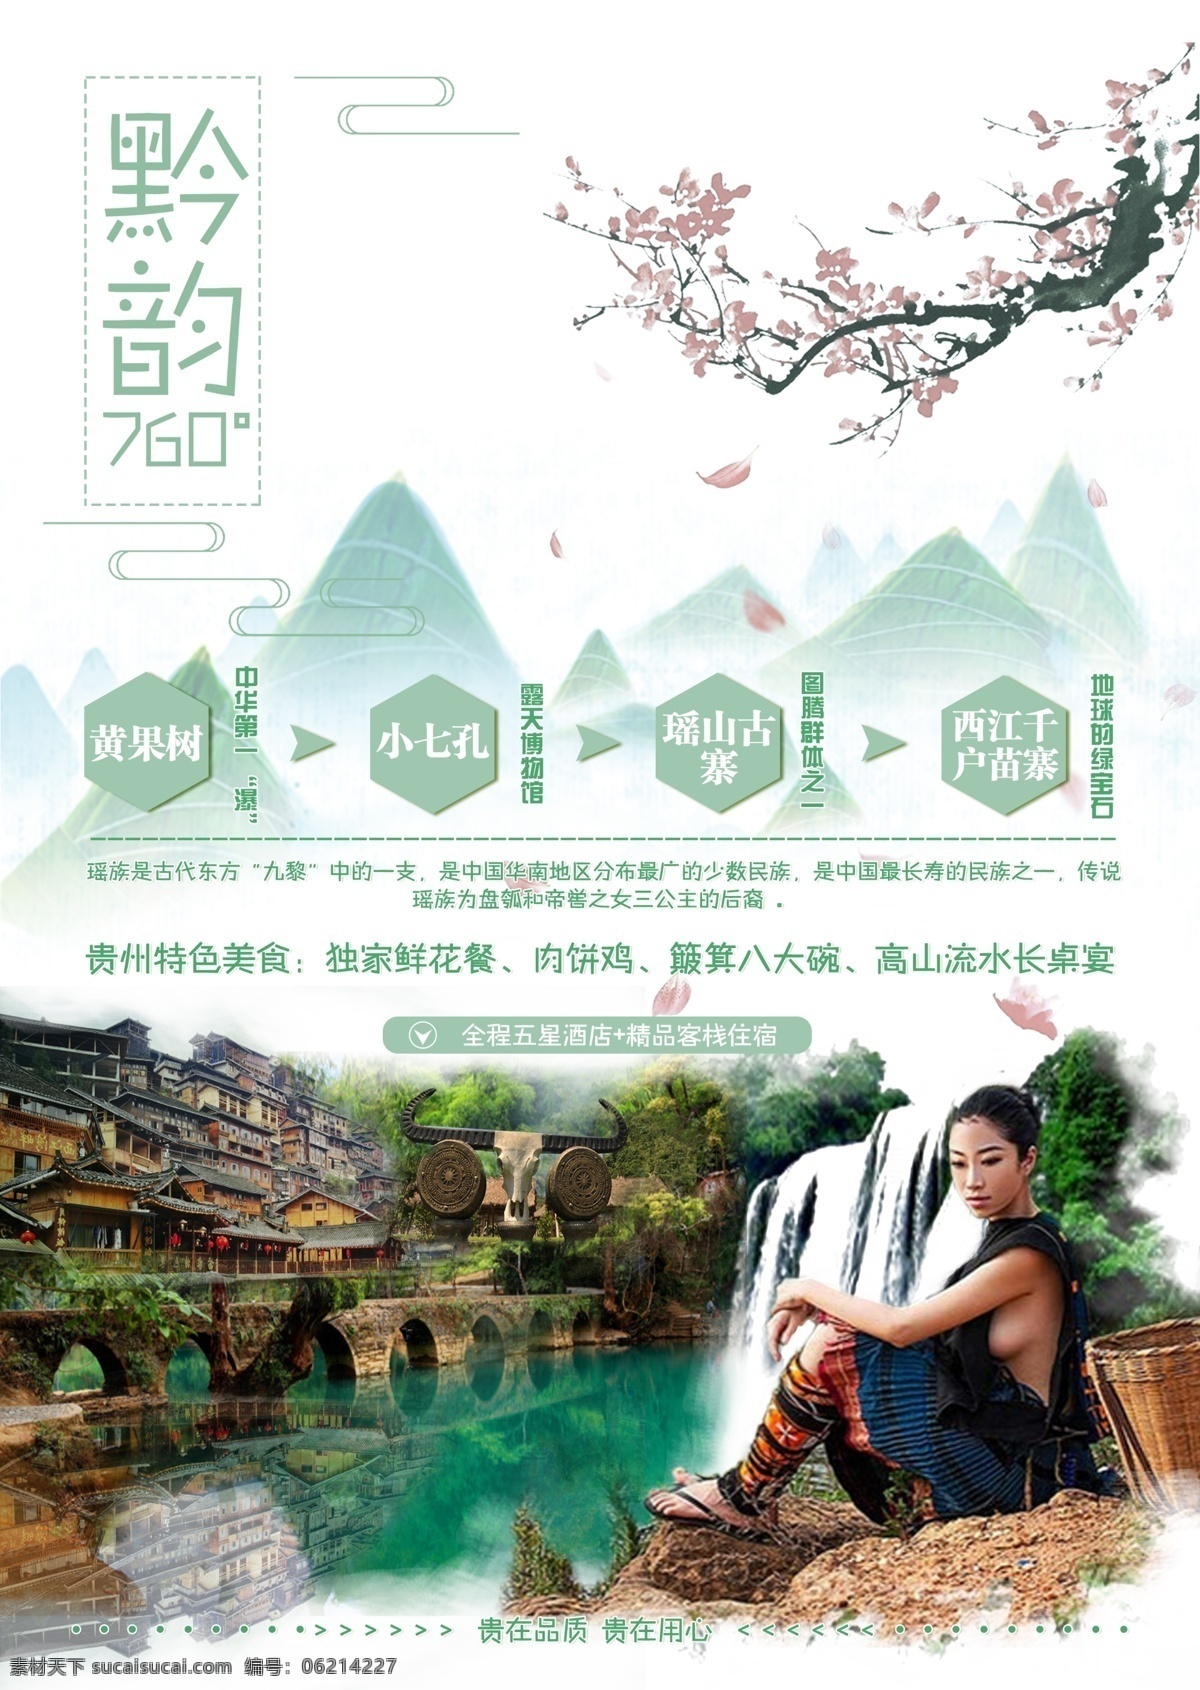 黄果树 旅游 平面广告 节日海报 广告 景点 海报 贵州